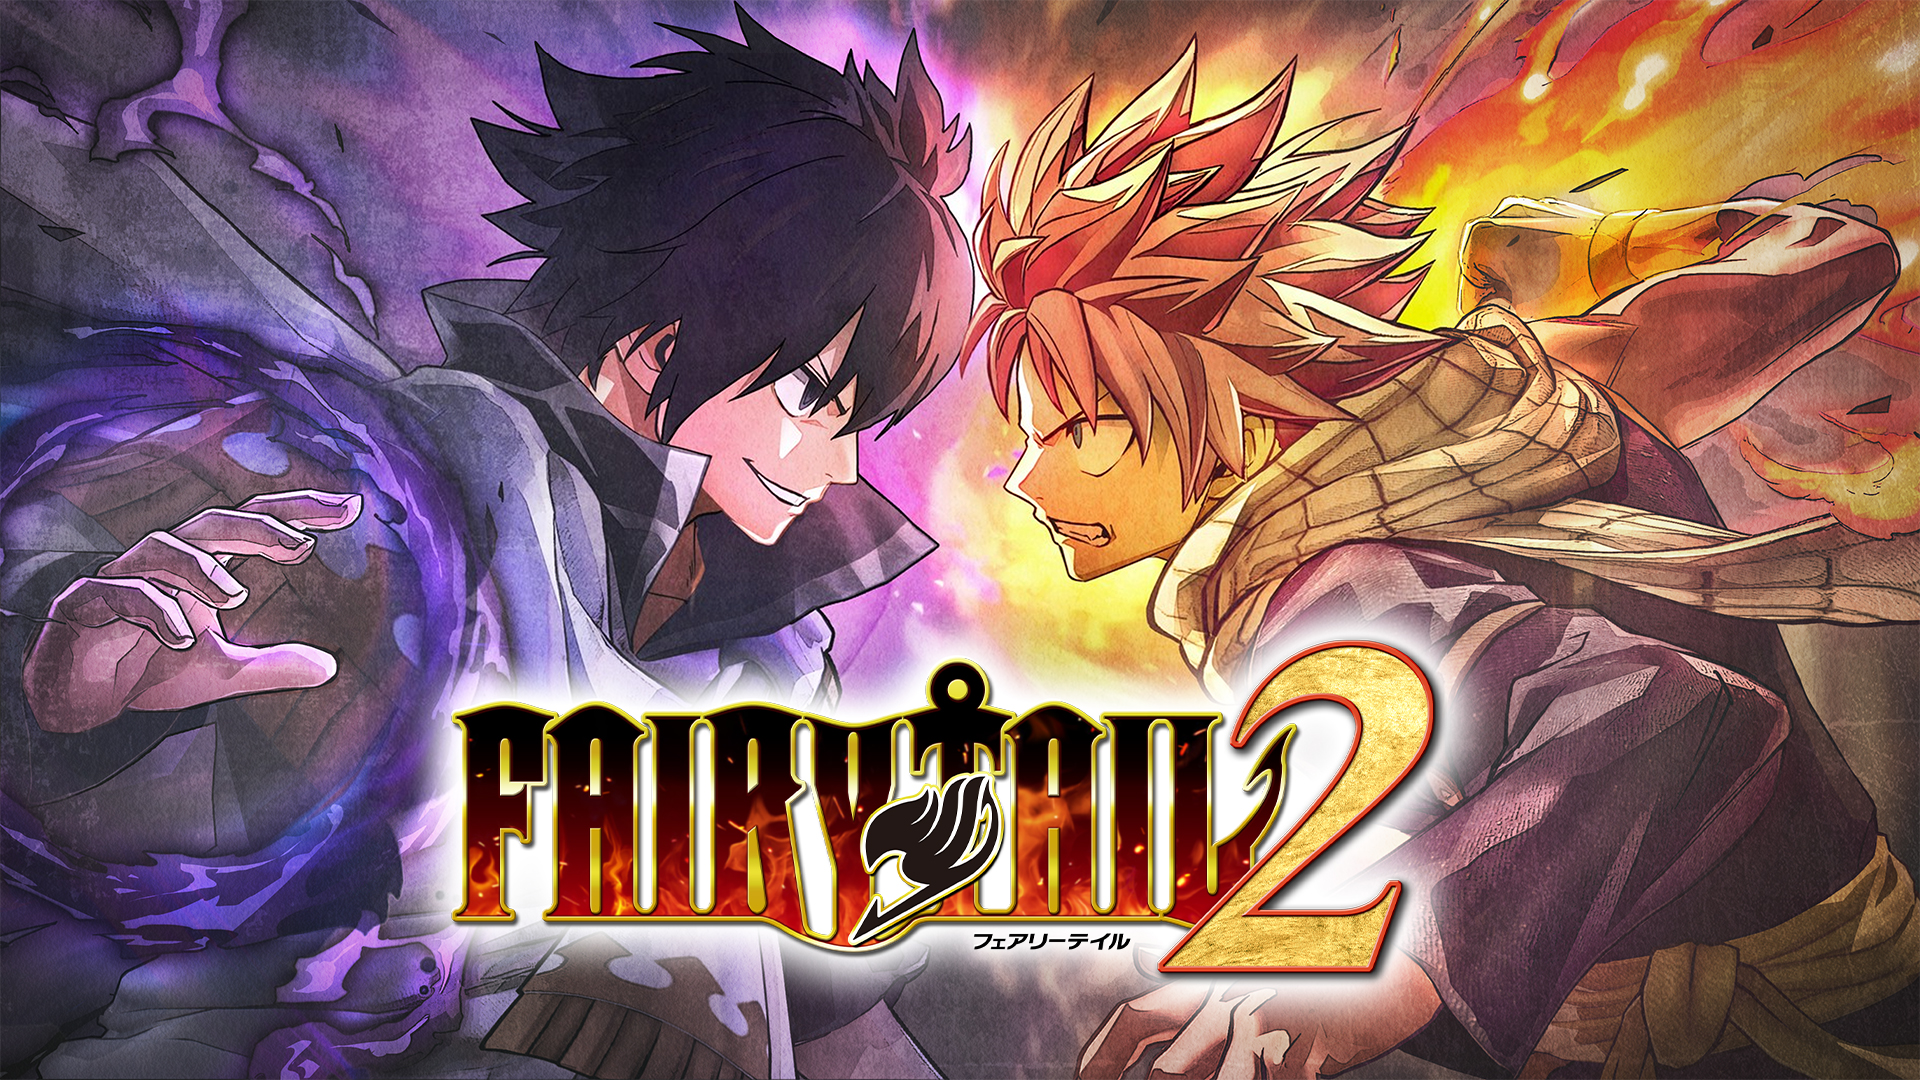 Fairy Tail 2 keyart